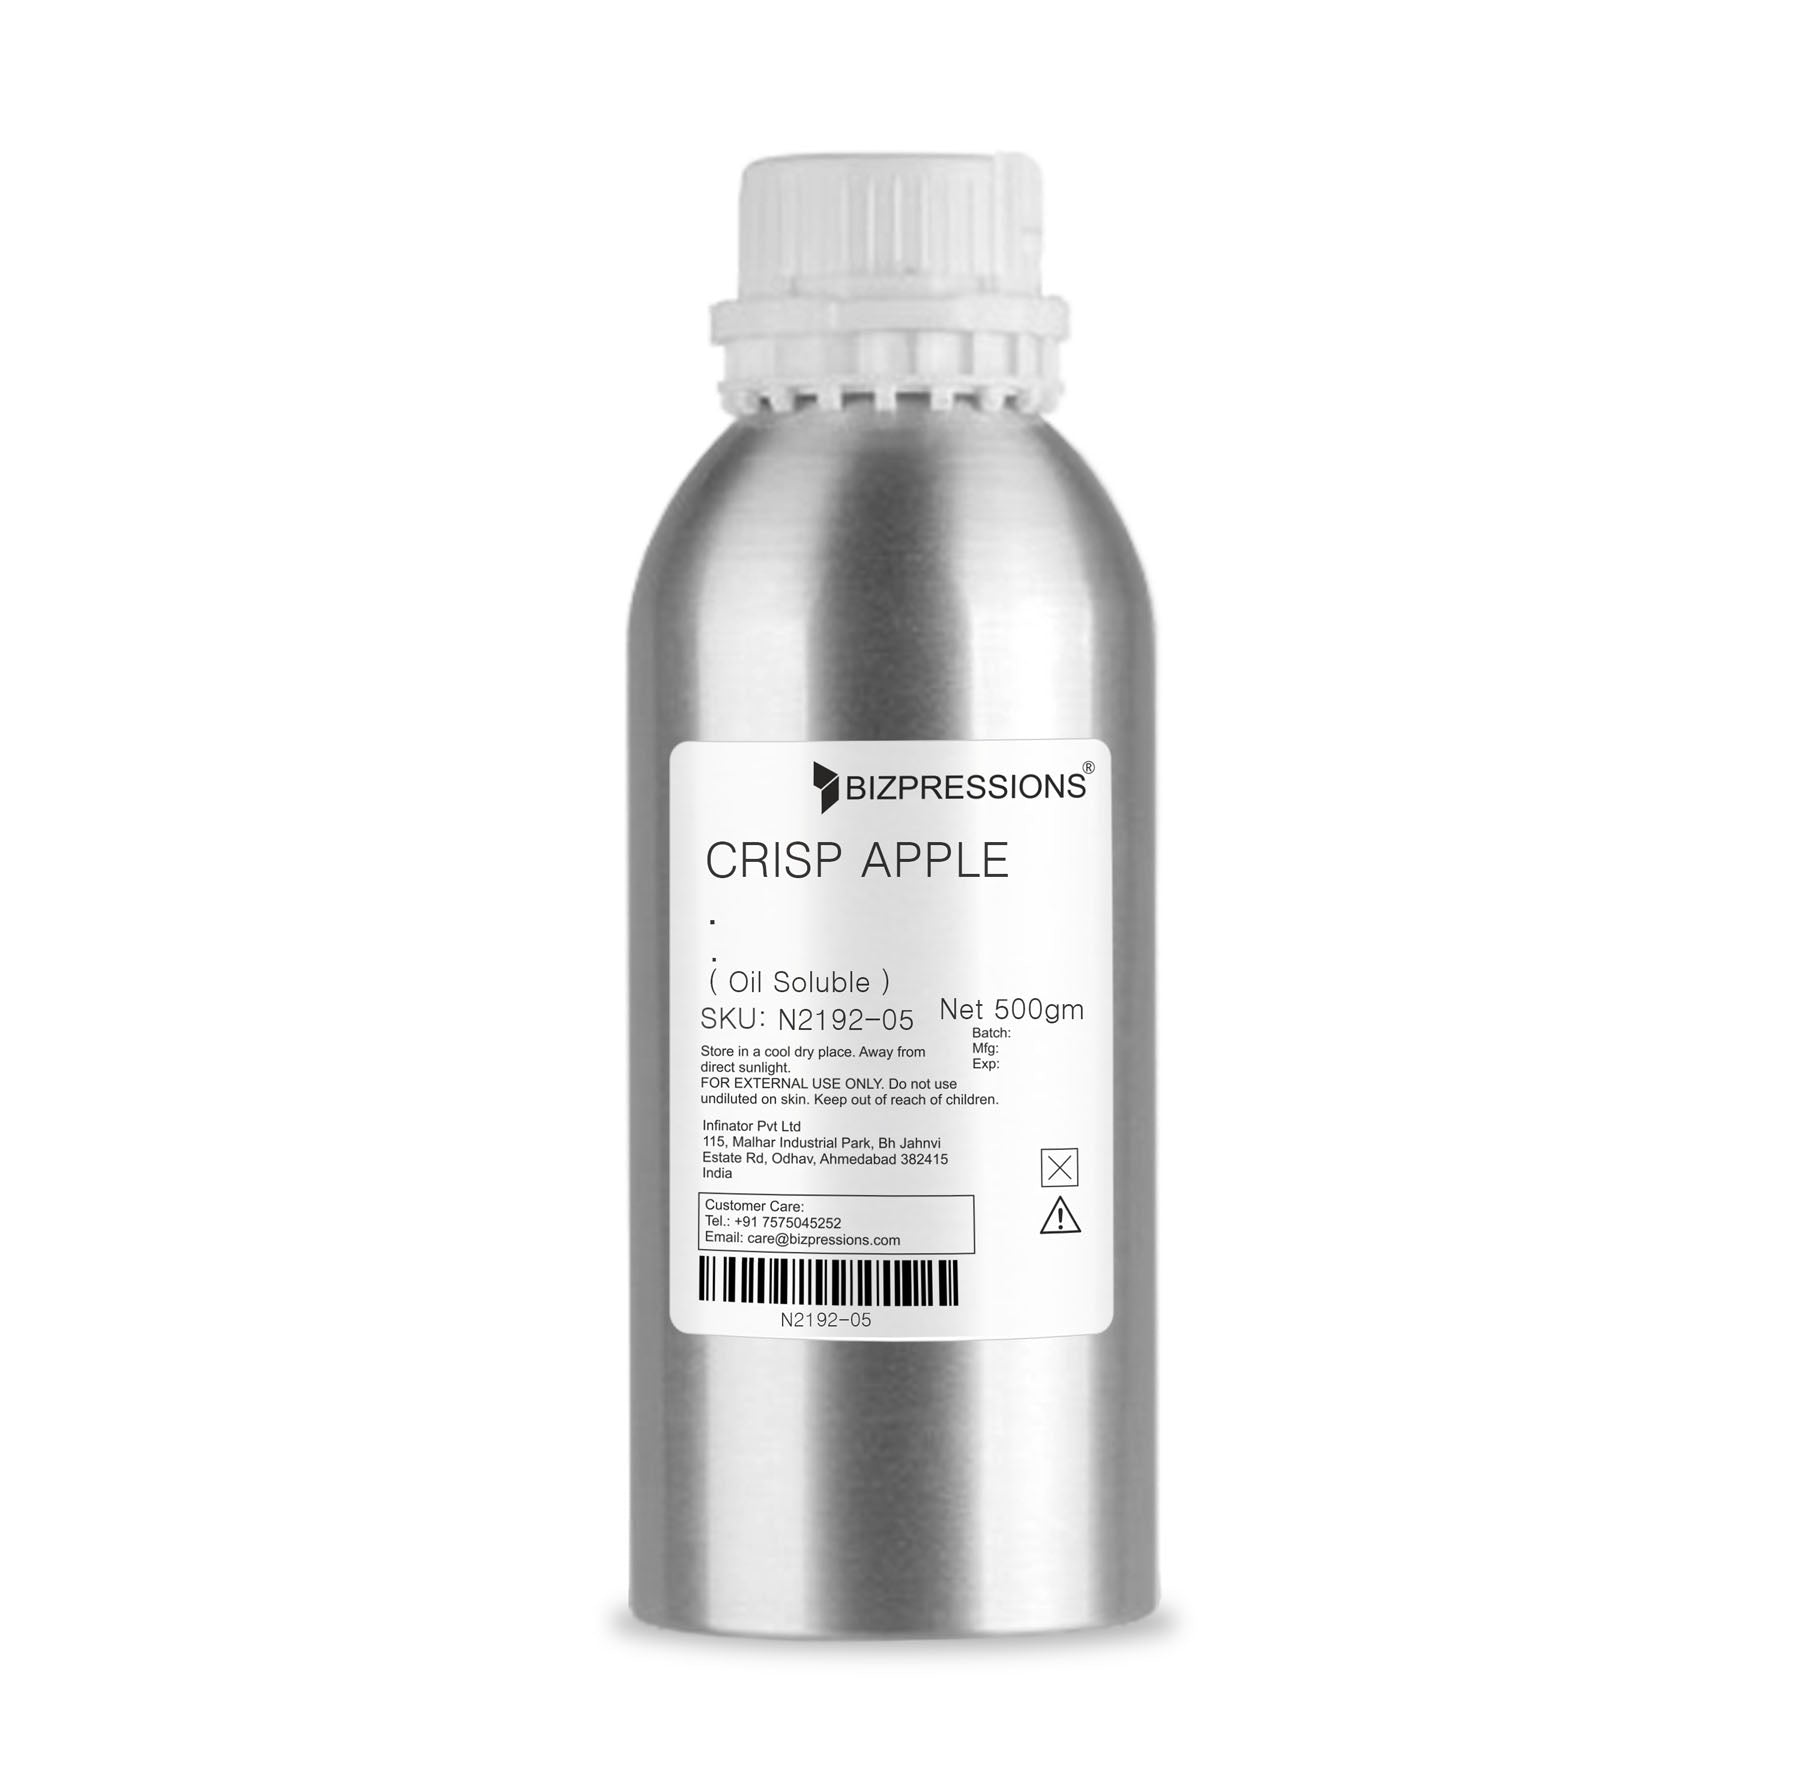 CRISP APPLE - Fragrance ( Oil Soluble ) - 500 gm